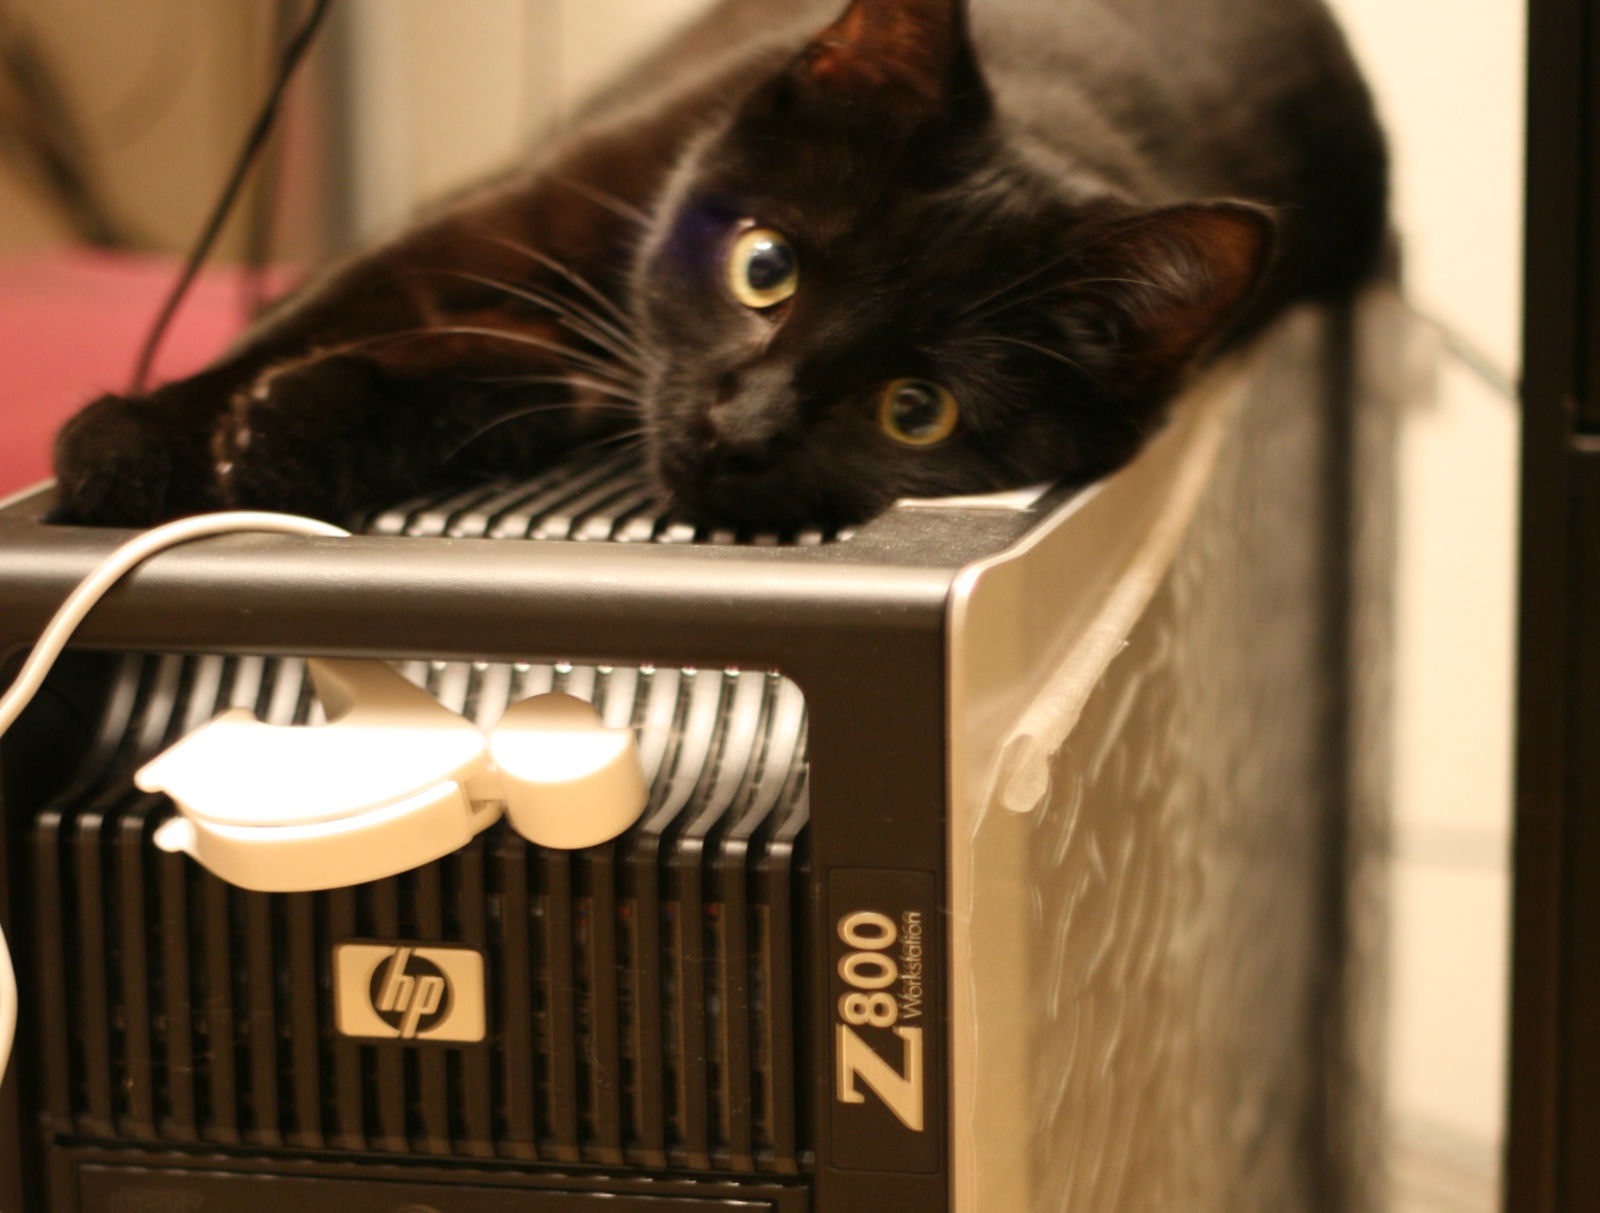 cat on HP Z800 workstation